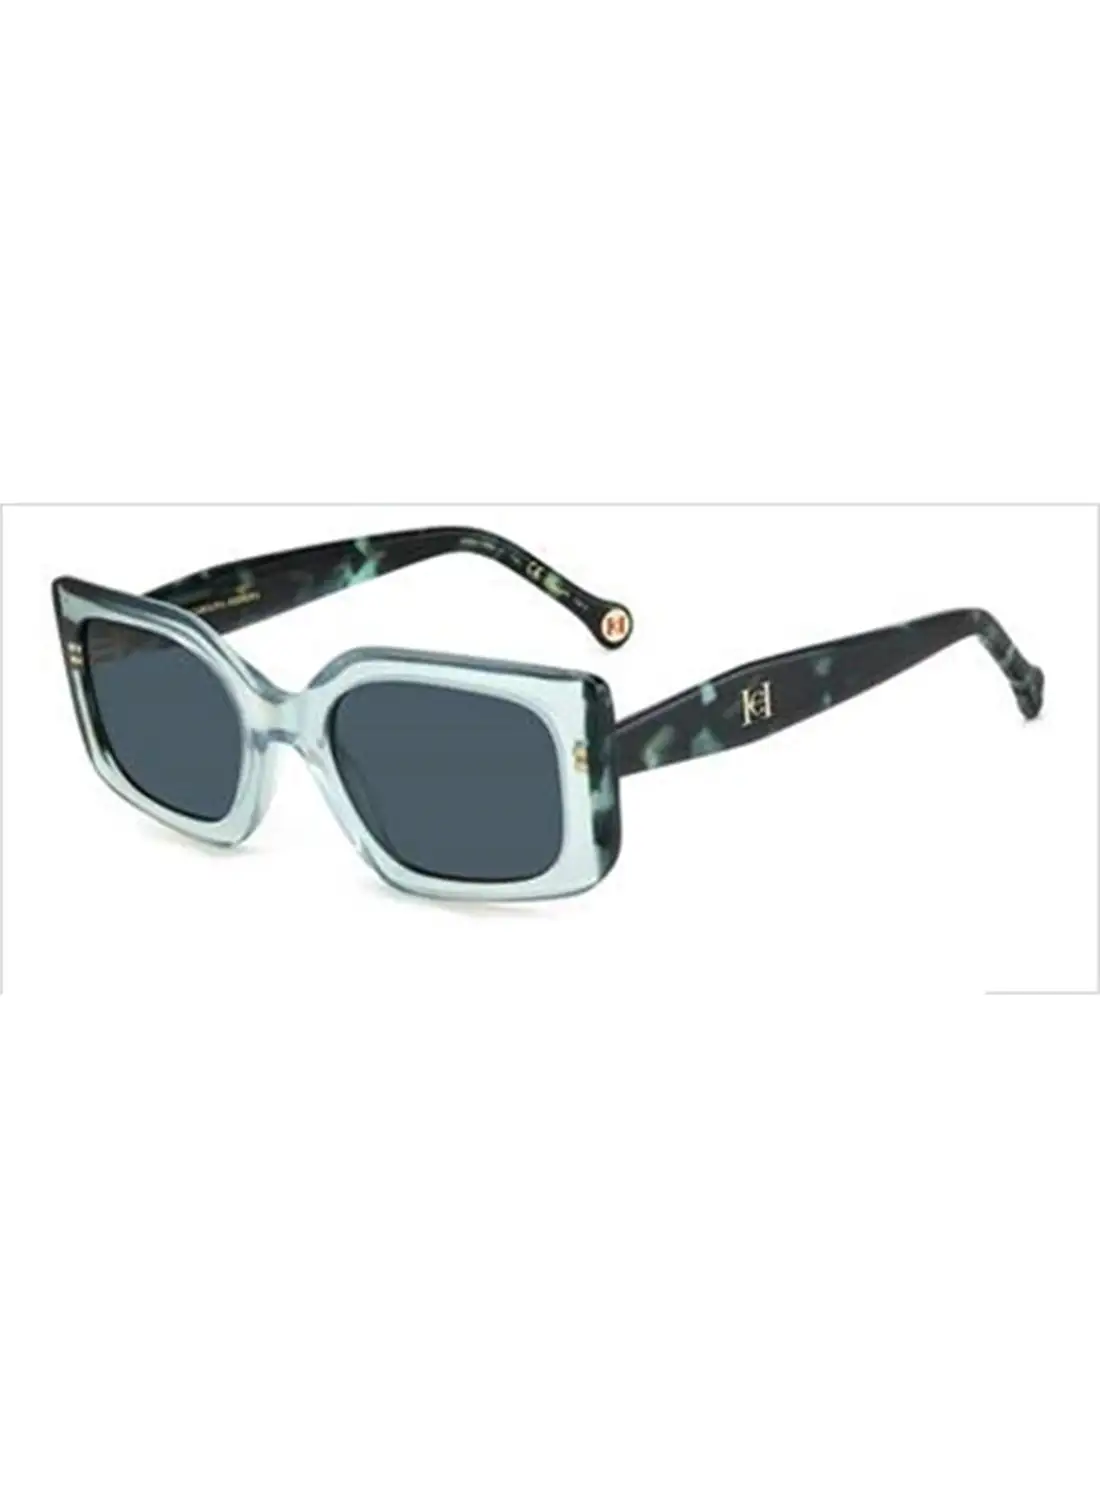 كارولينا هيريرا نظارة شمسية مستطيلة للنساء للحماية من الأشعة فوق البنفسجية - Her 0182/S Green 22 - مقاس العدسة: 37.6 ملم